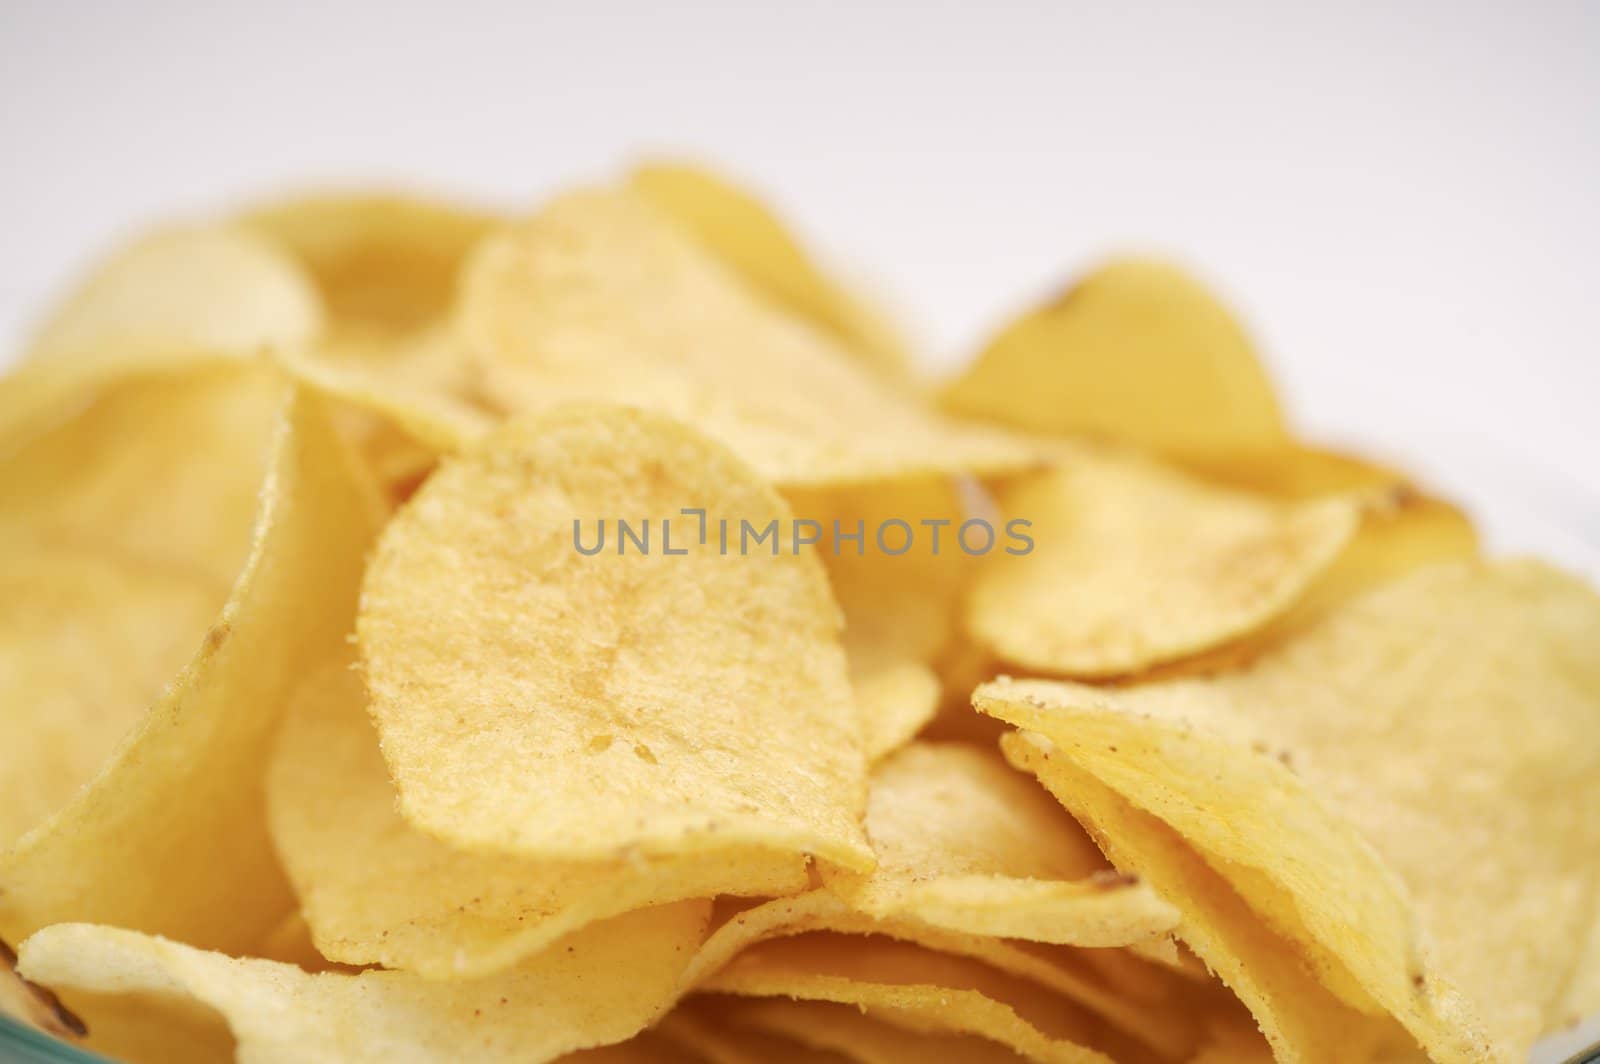 Potato chips by Baltus